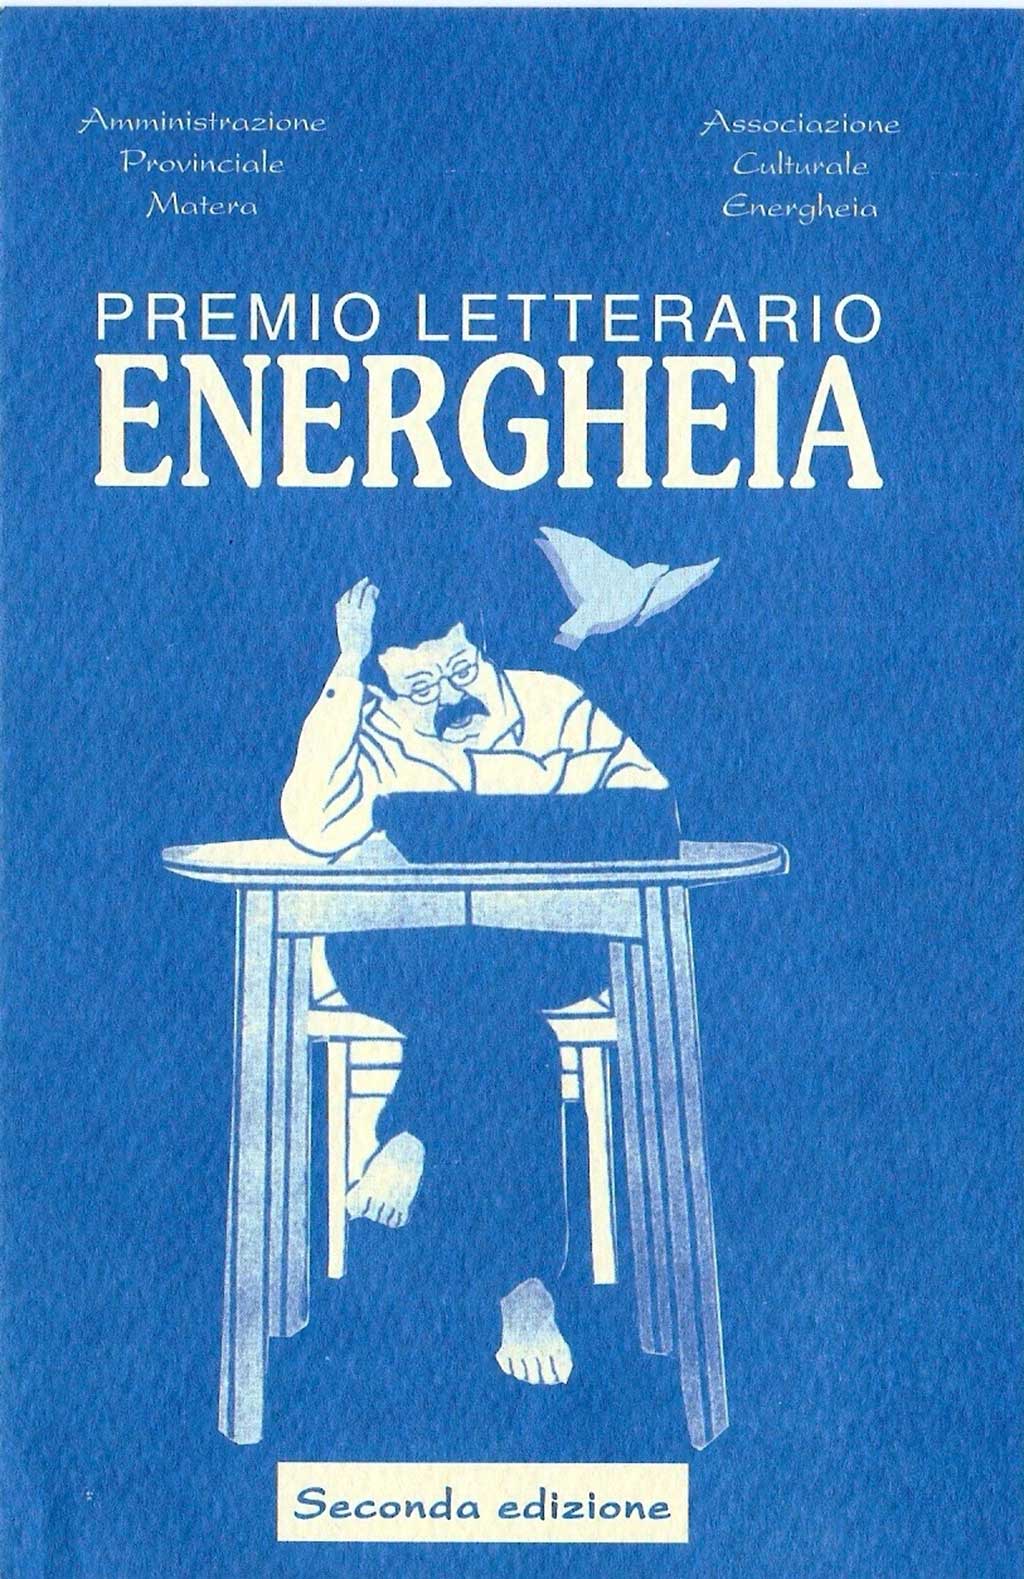 Il bando della II edizione del Premio letterario Energheia